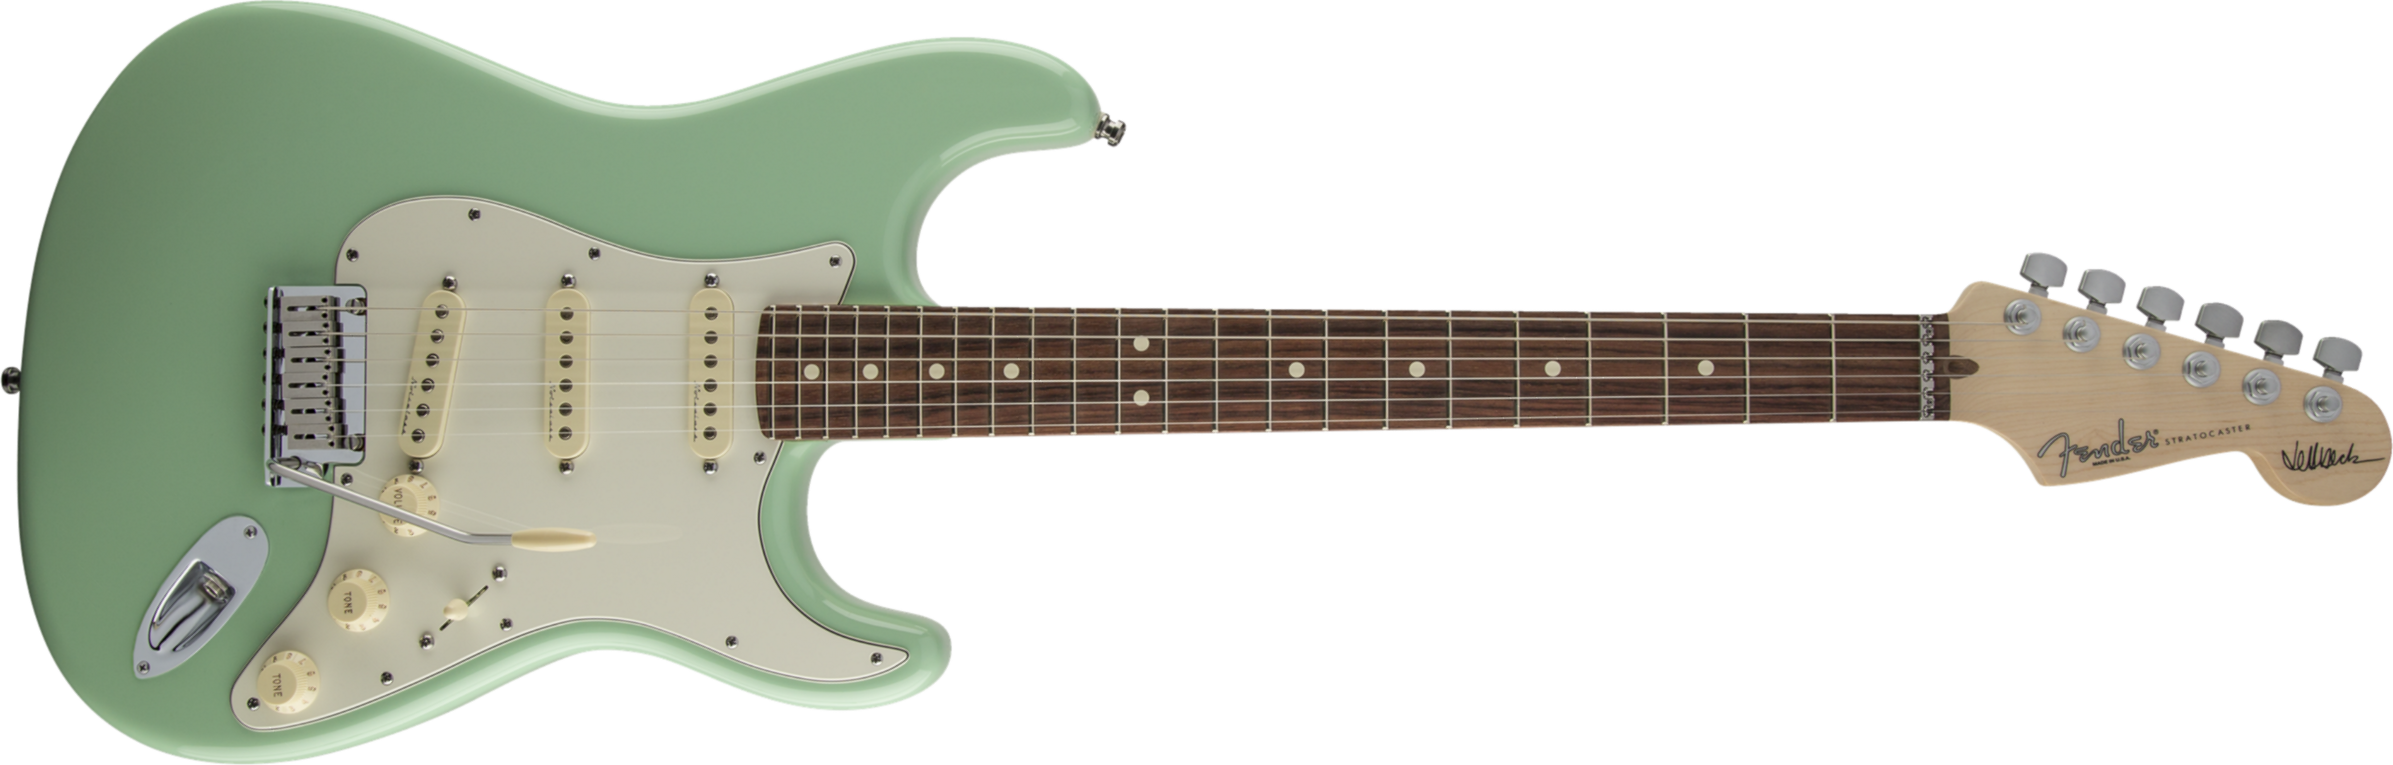 Fender Stratocaster Jeff Beck - Surf Green - Elektrische gitaar in Str-vorm - Main picture